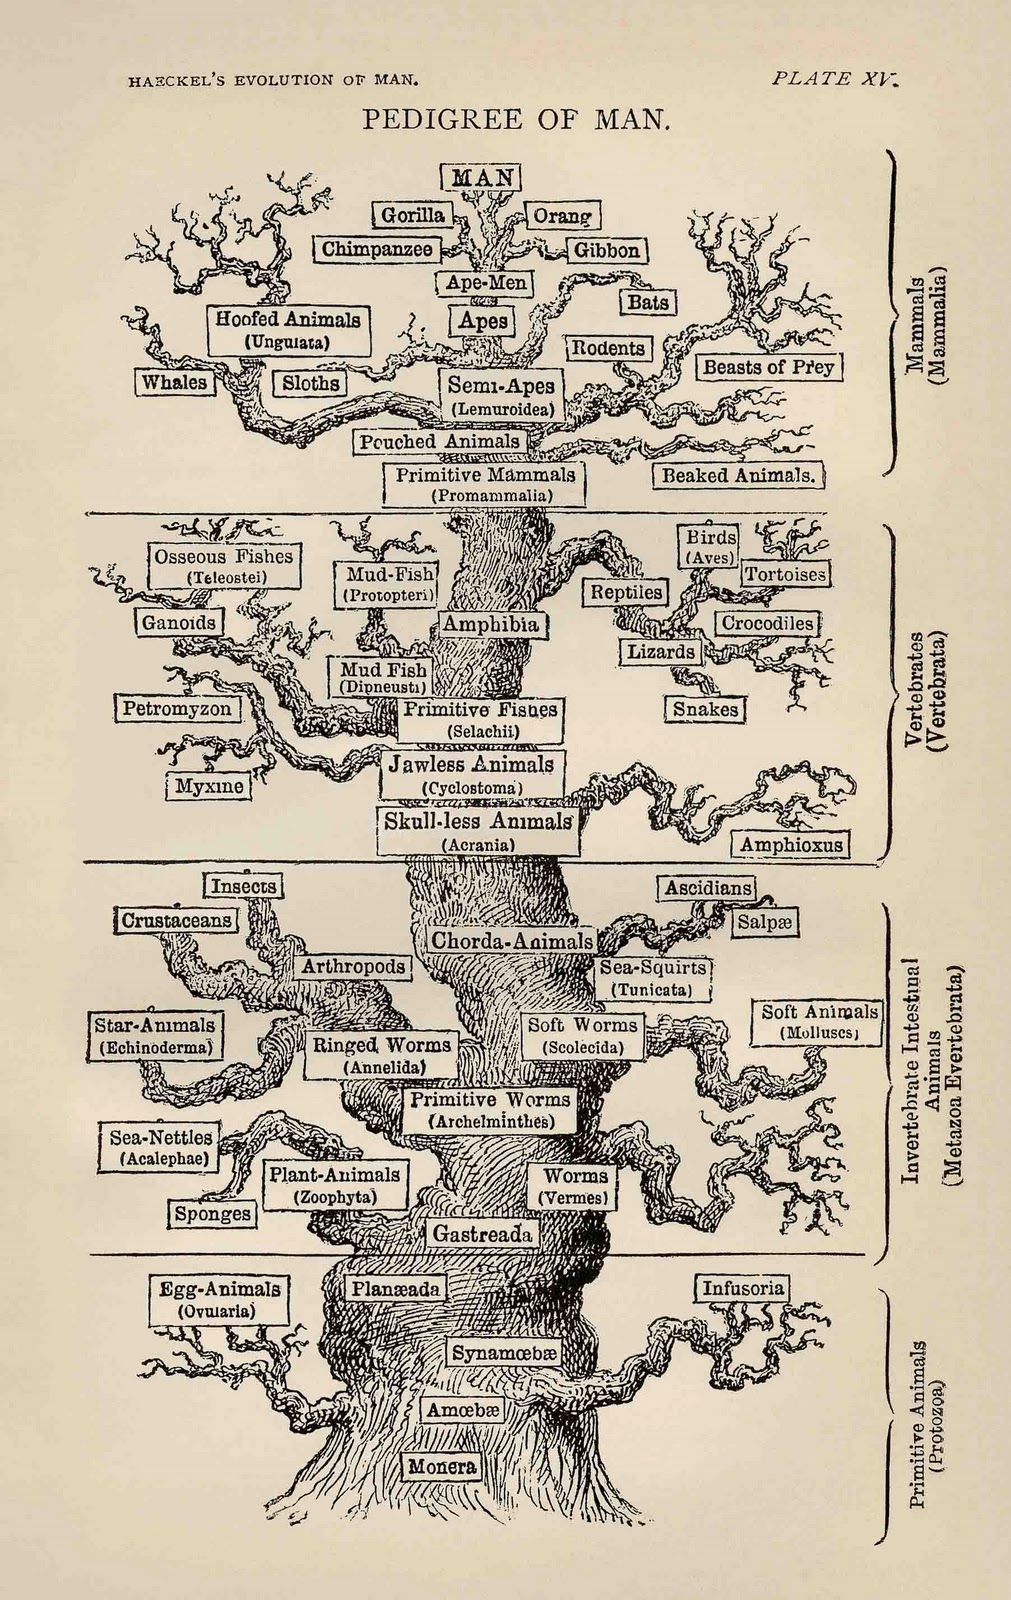 Arbre dels ascendents del home, segons Haeckel al 1874